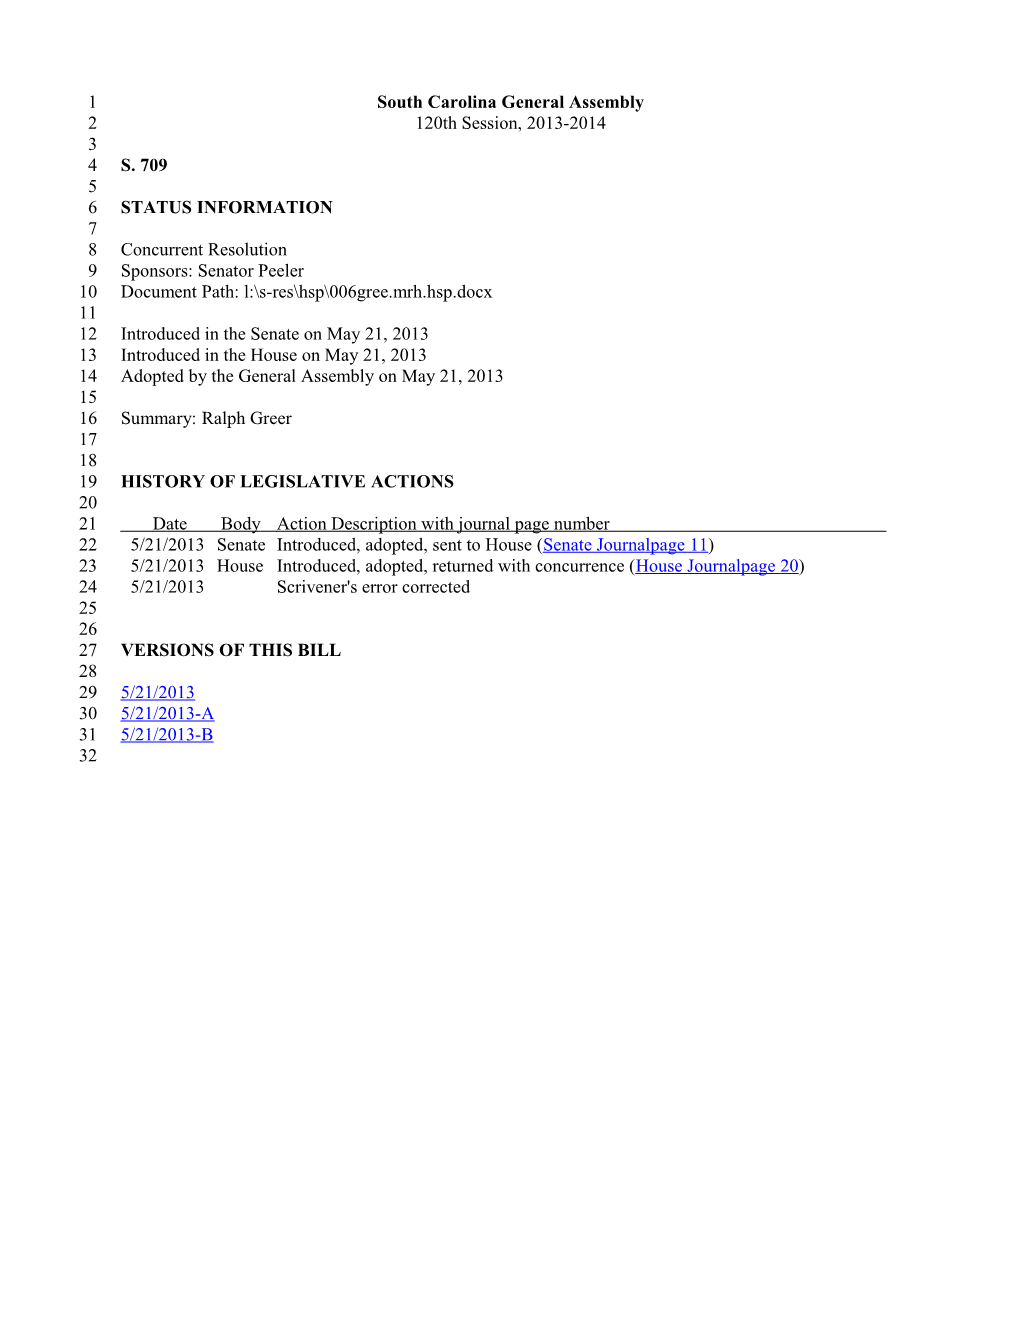 2013-2014 Bill 709: Ralph Greer - South Carolina Legislature Online